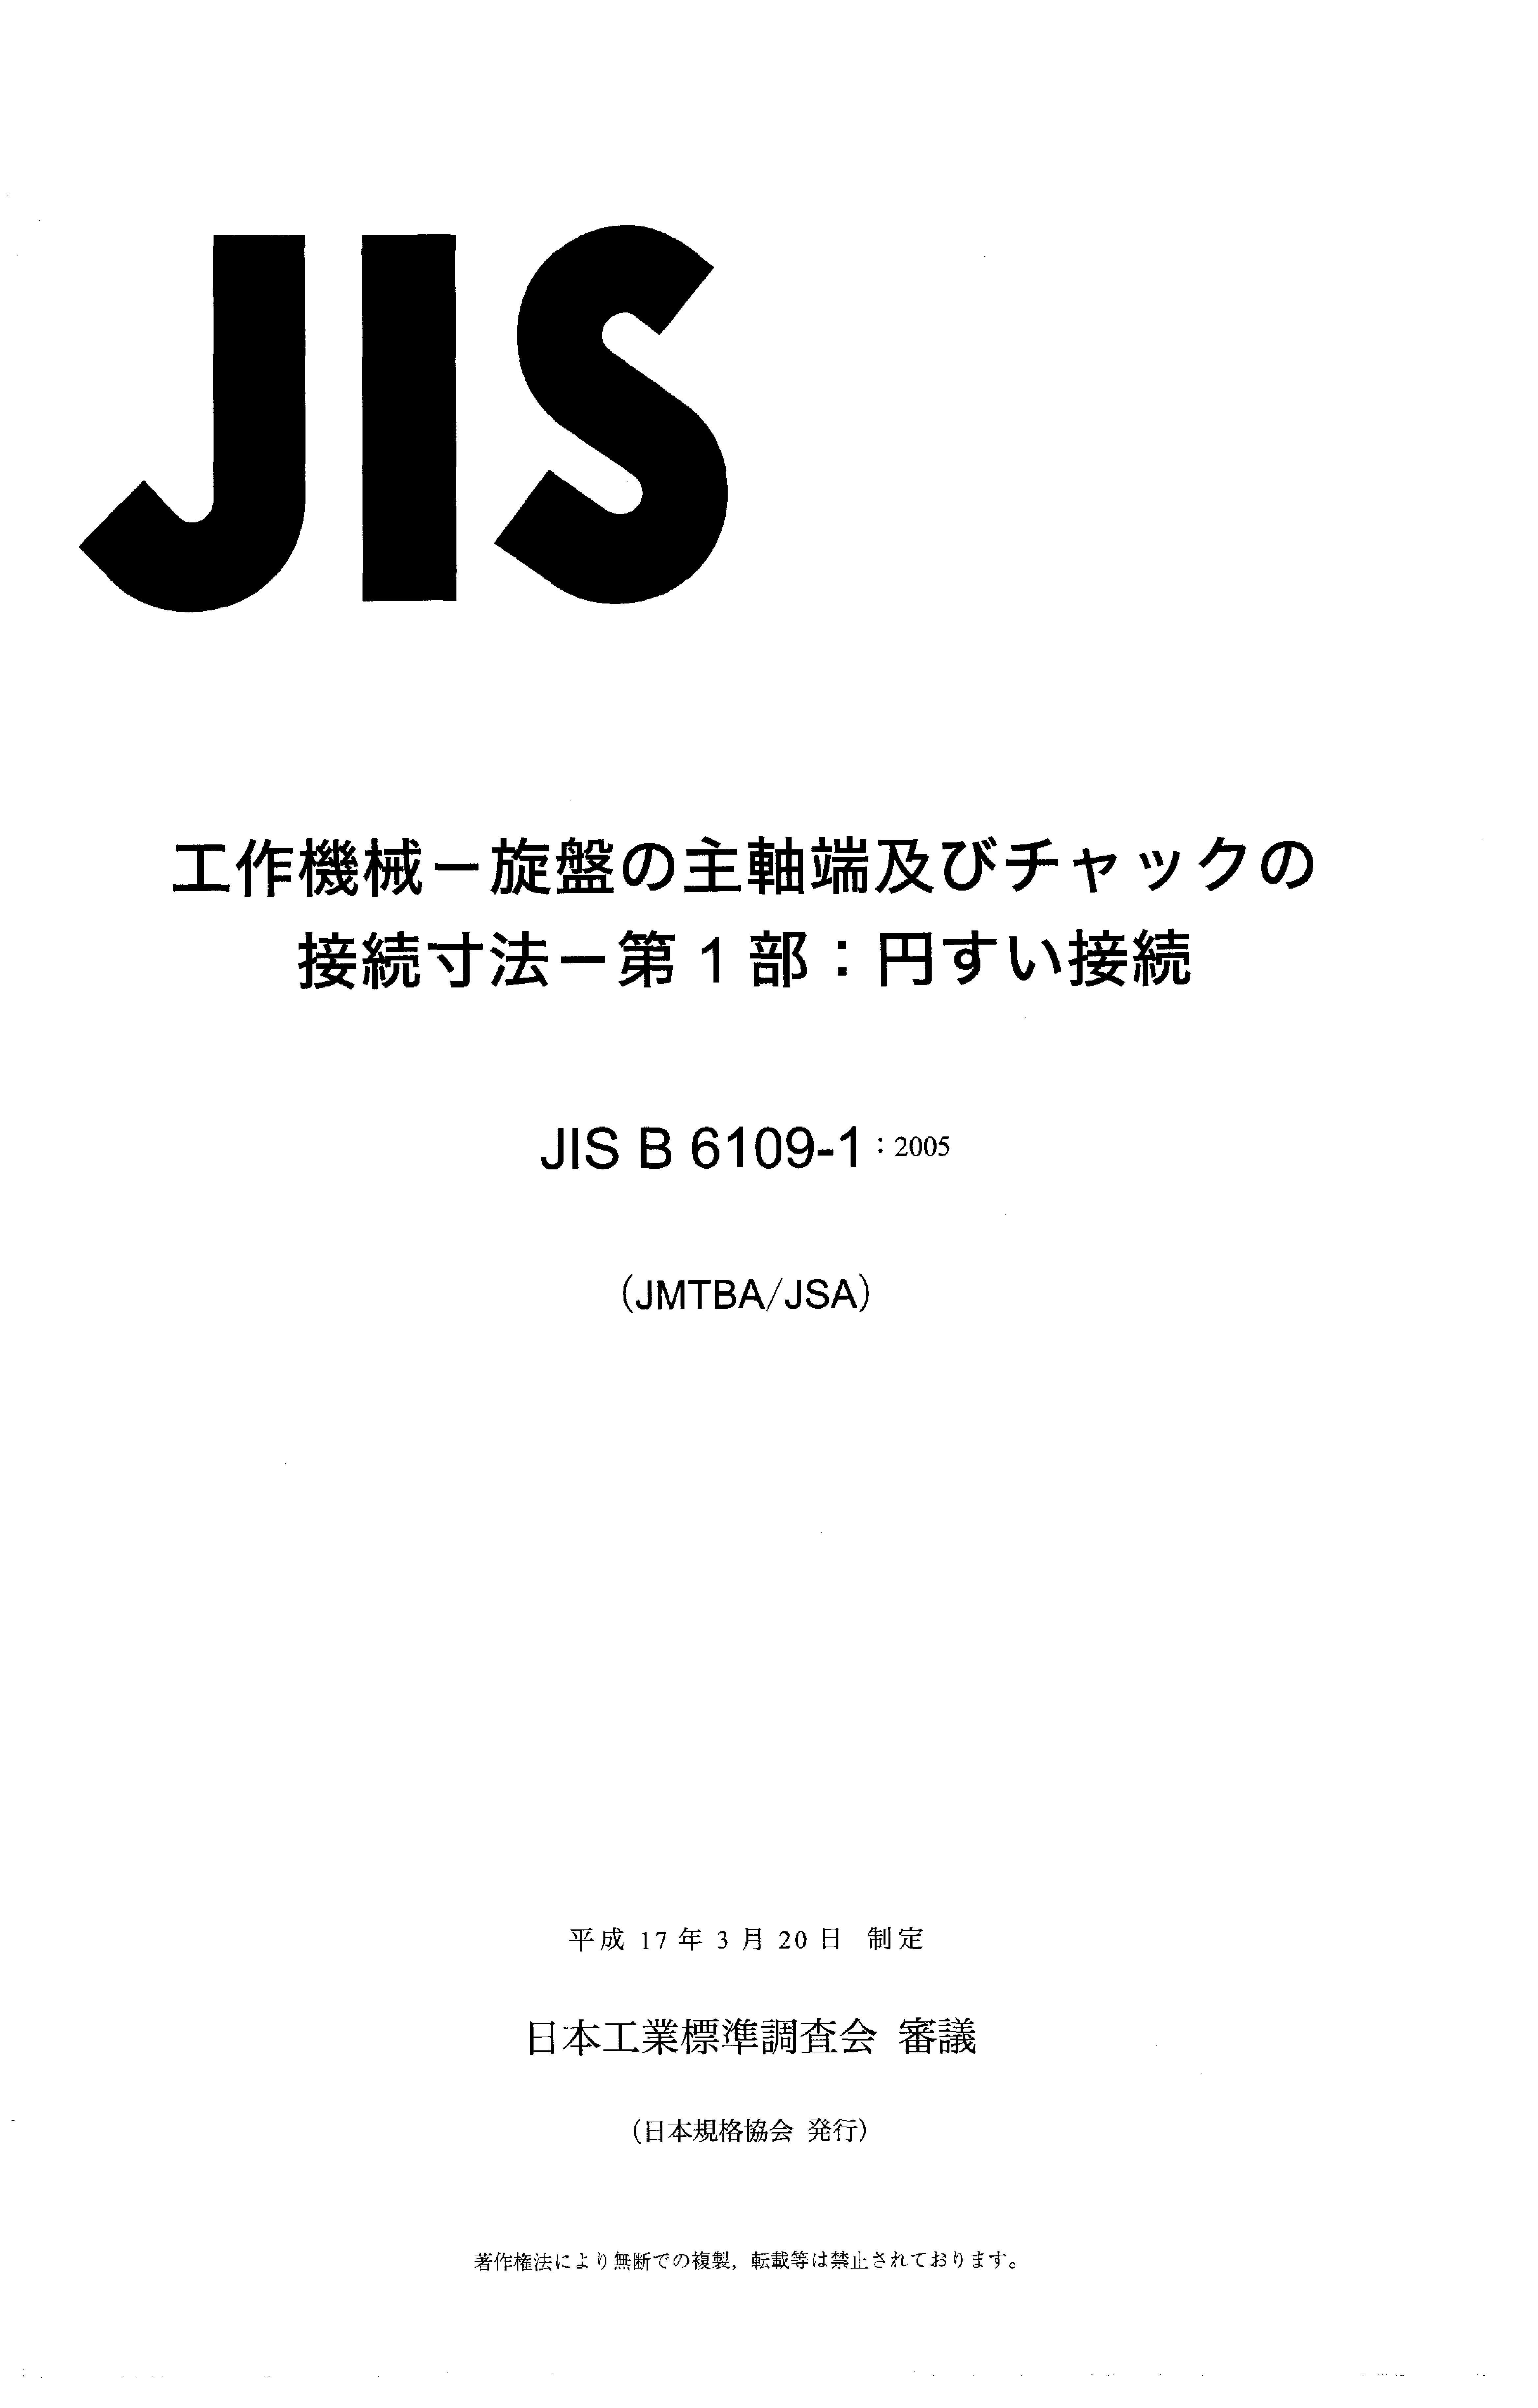 JIS B 6109-1:2005封面图